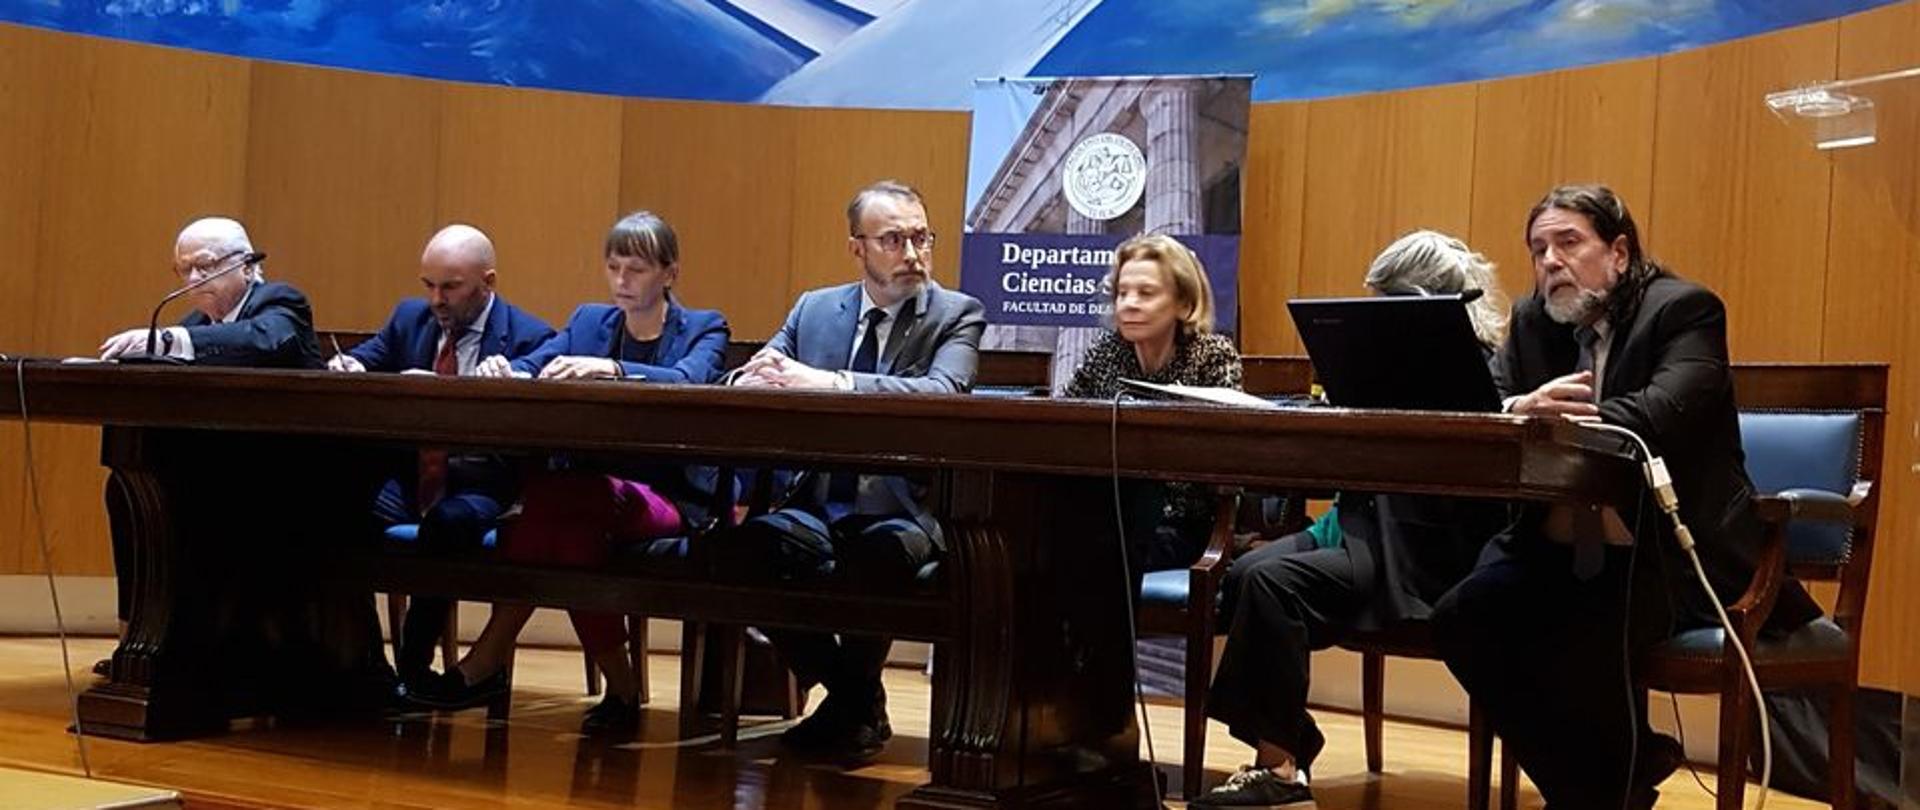 Aleksandra Piątkowska, Ambasador RP w Argentynie wystąpiła w ramach panelu „Inwazja na Ukrainie: wizja społeczno-prawna” na Wydziale Prawa Uniwersytetu Buenos Aires. 